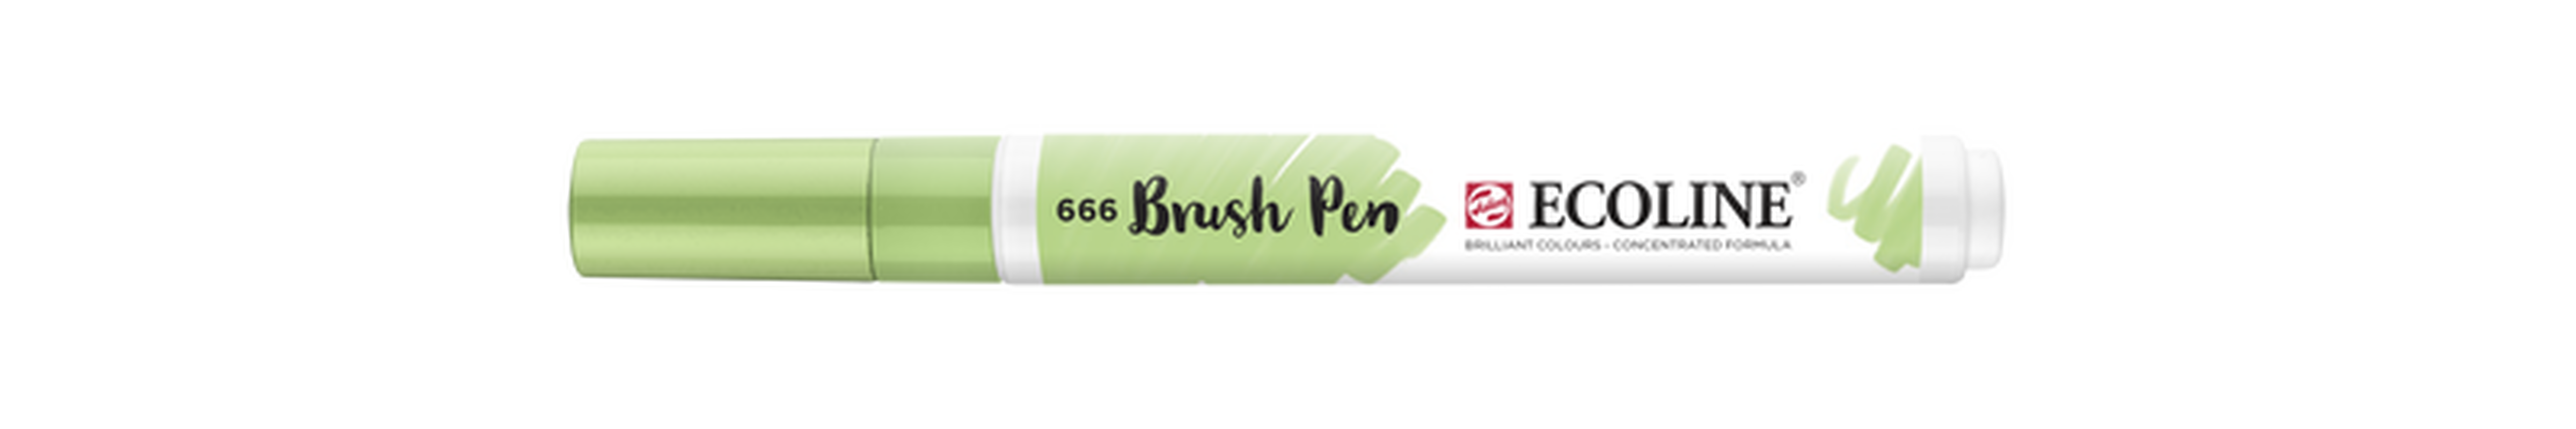 Talens Brush Pen Ecoline Number 666 Color Pastel Green